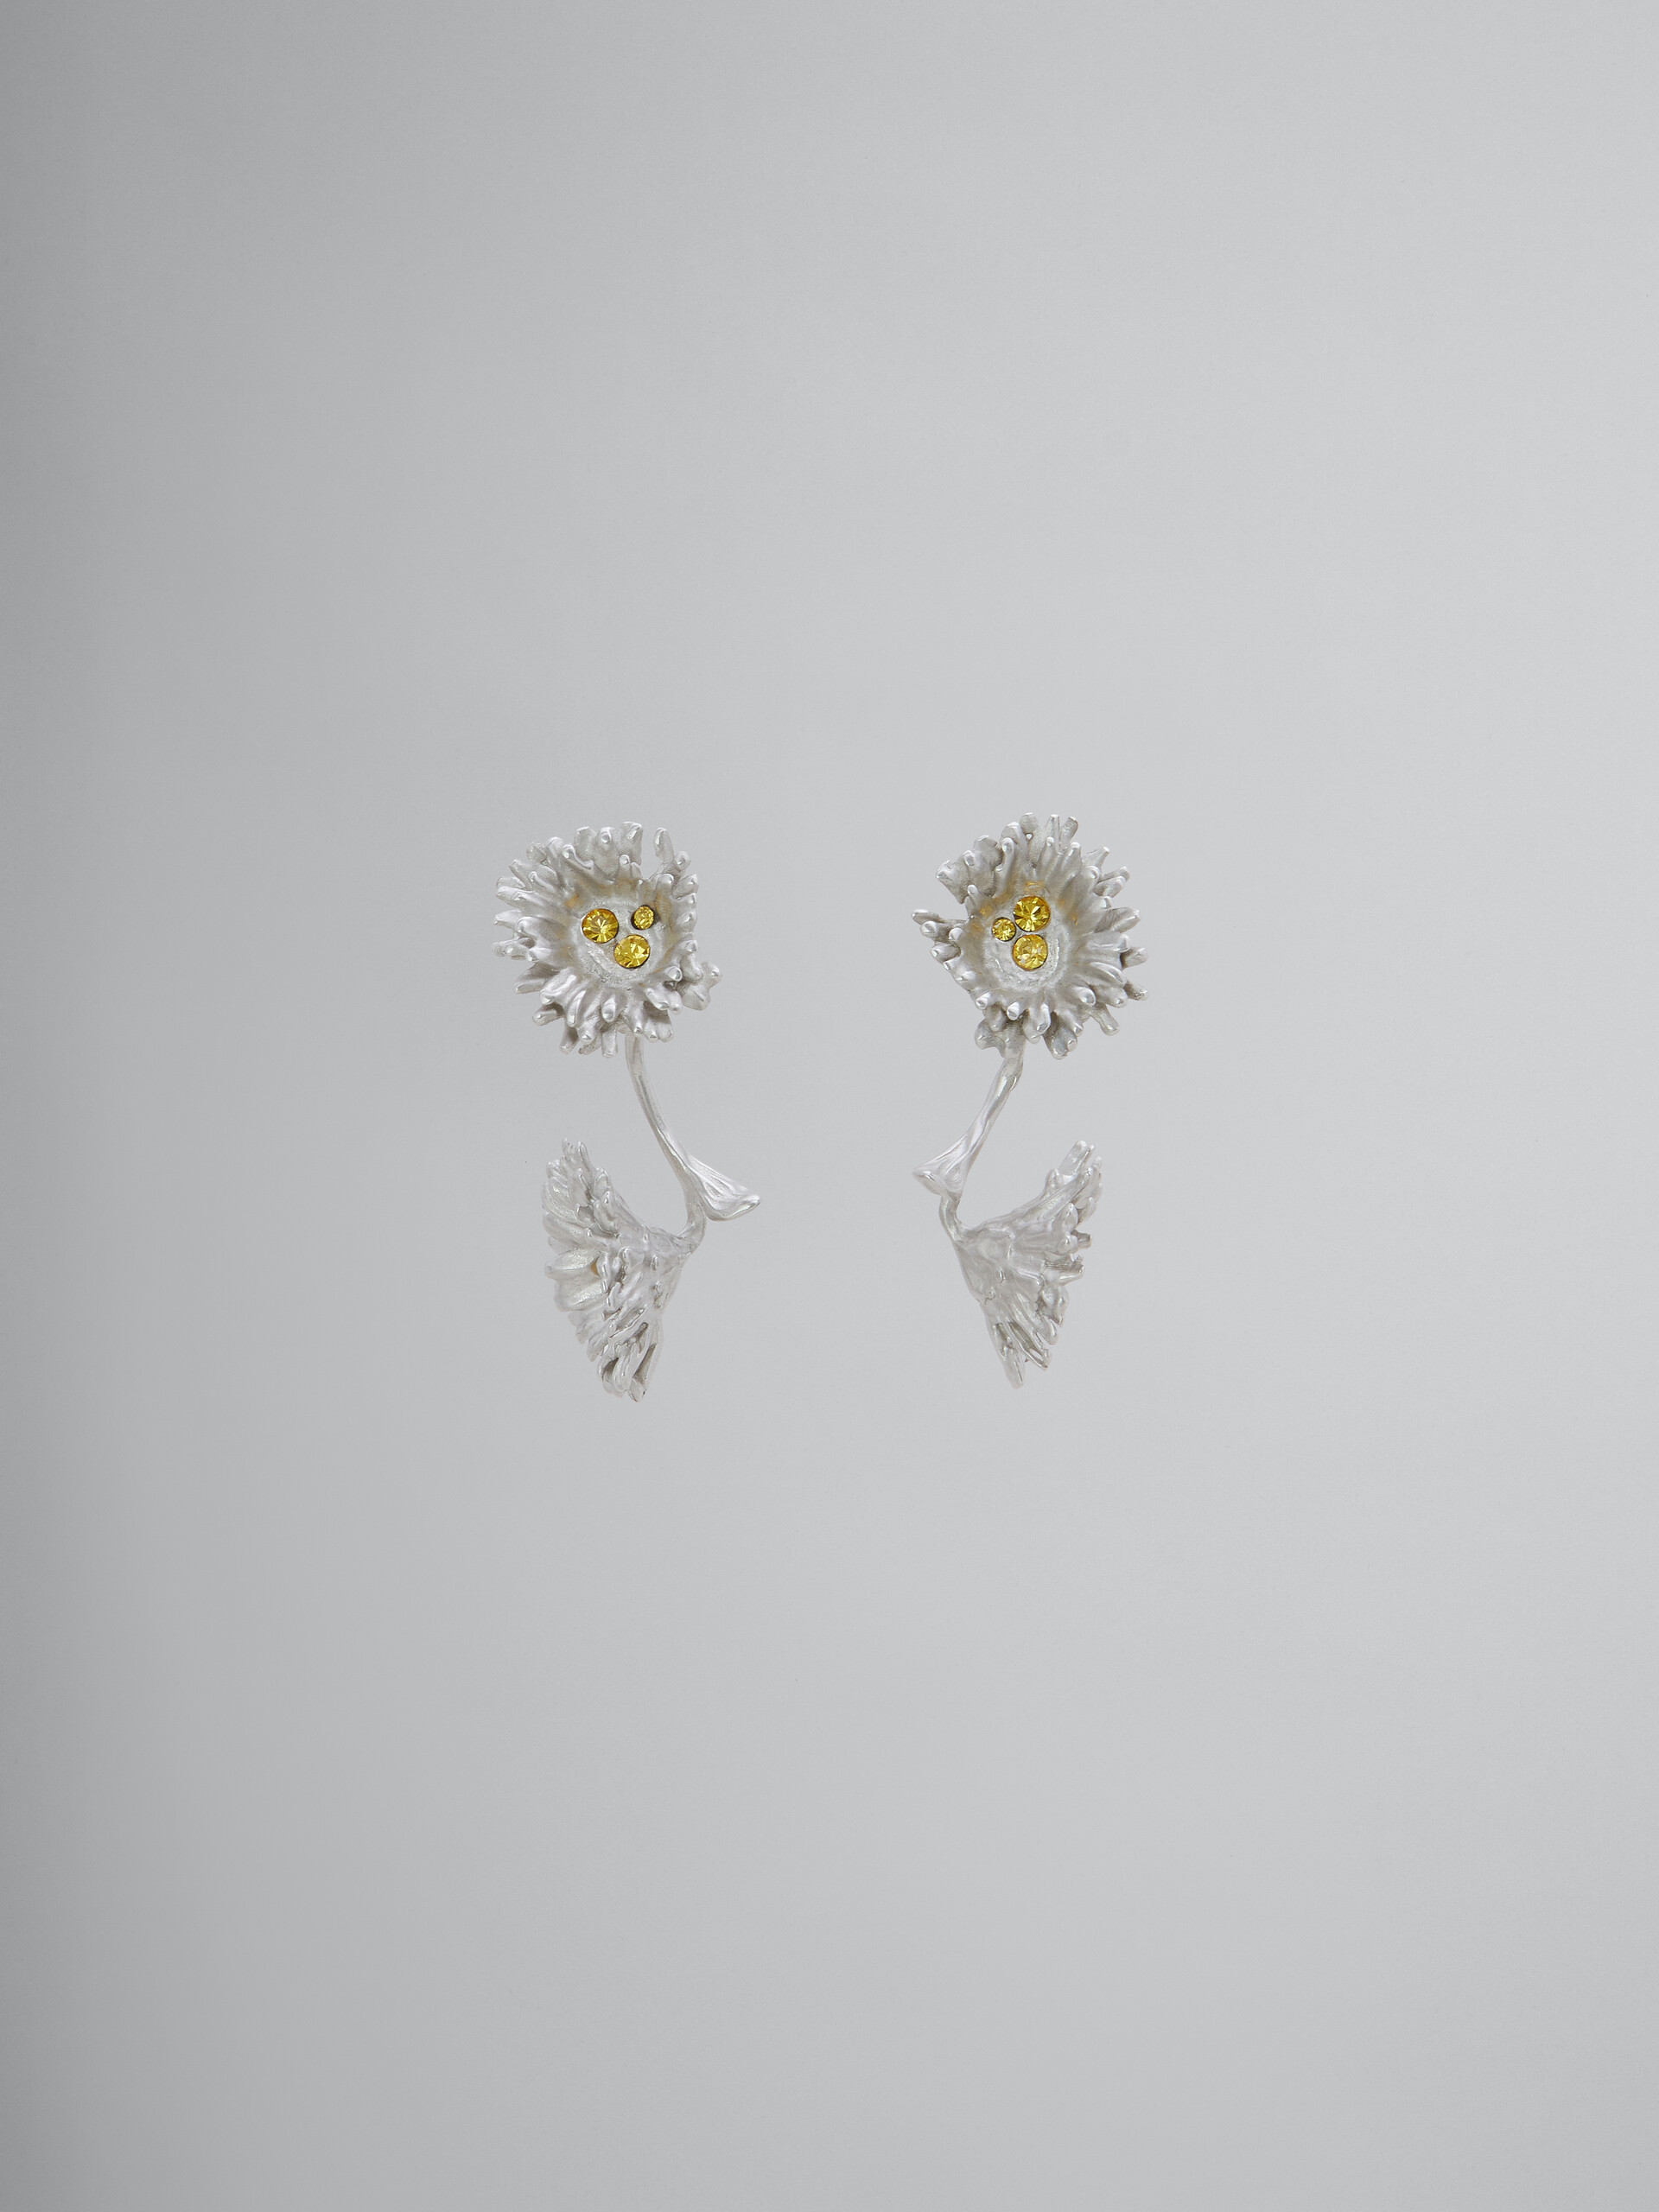 Ohrringe aus Metall mit Gänseblümchen und Kristallen - Ohrringe - Image 1